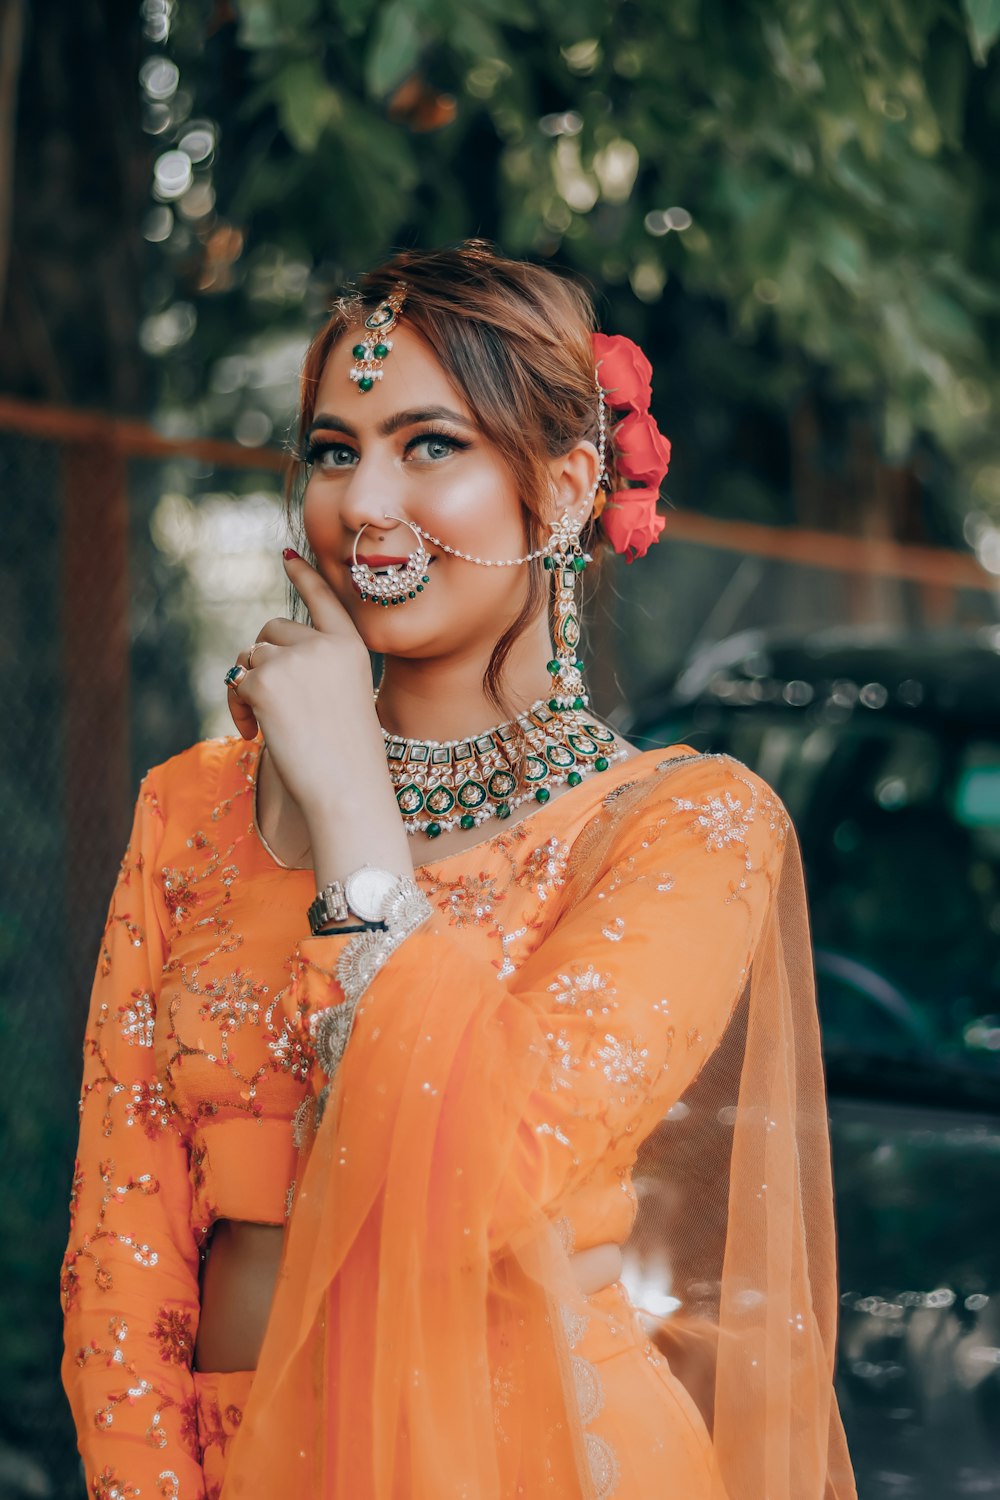 woman in orange dress wearing silver necklace